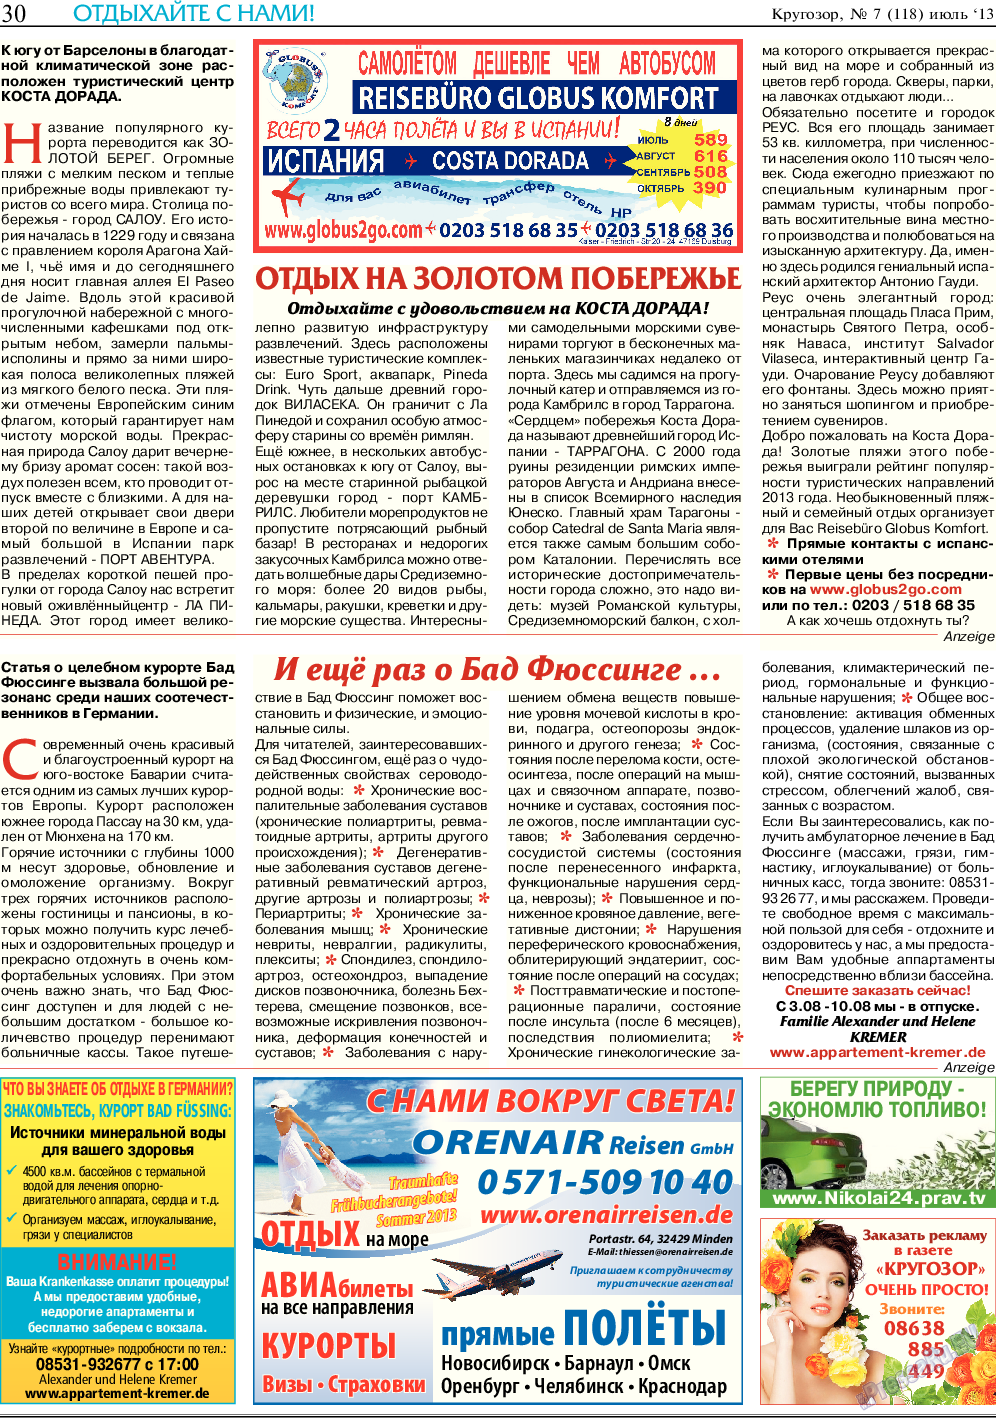 Кругозор, газета. 2013 №7 стр.30